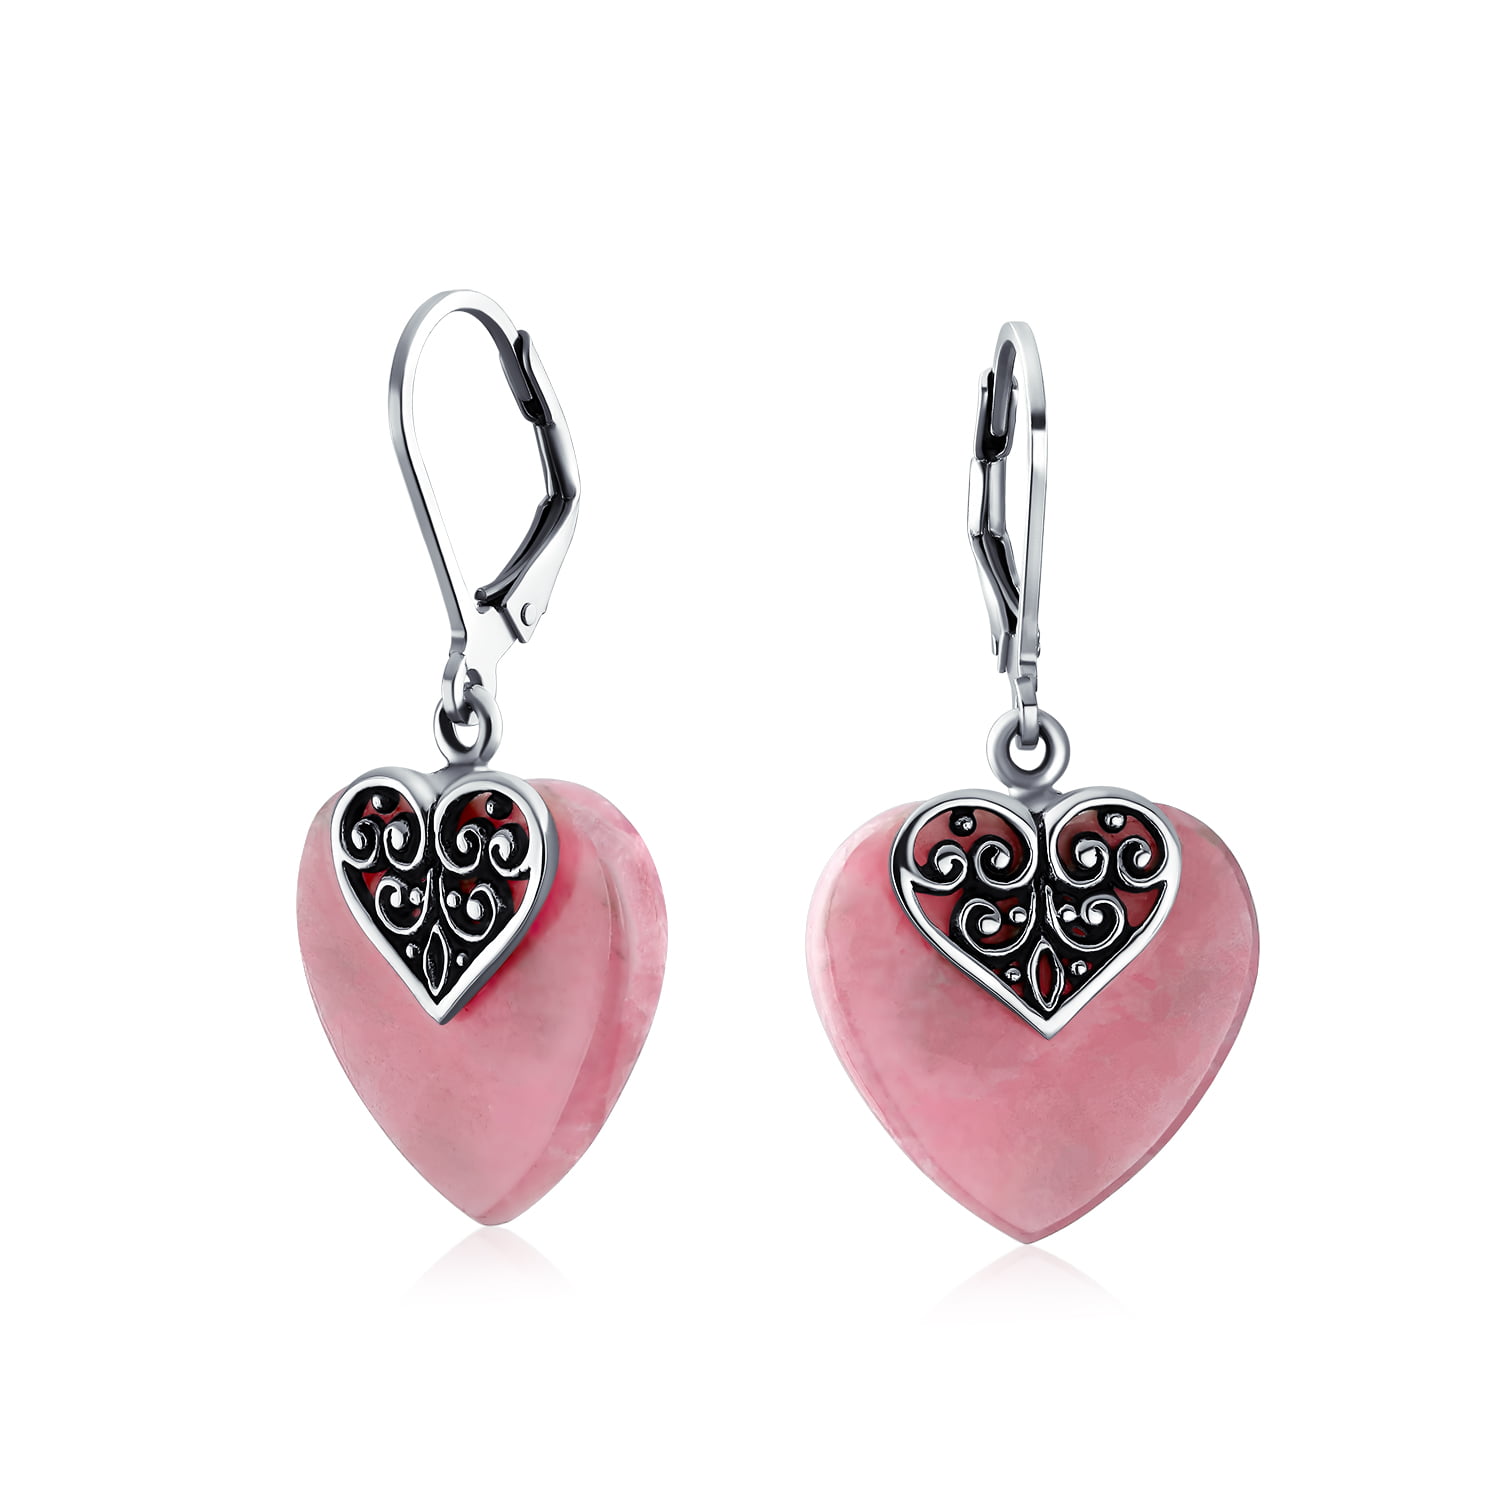 Heart Rhodochrosite Earring/Sterling Silver Earring/Natural Rhodochrosite Heart Earring /Pink  Heart Earring/Valentine Gift